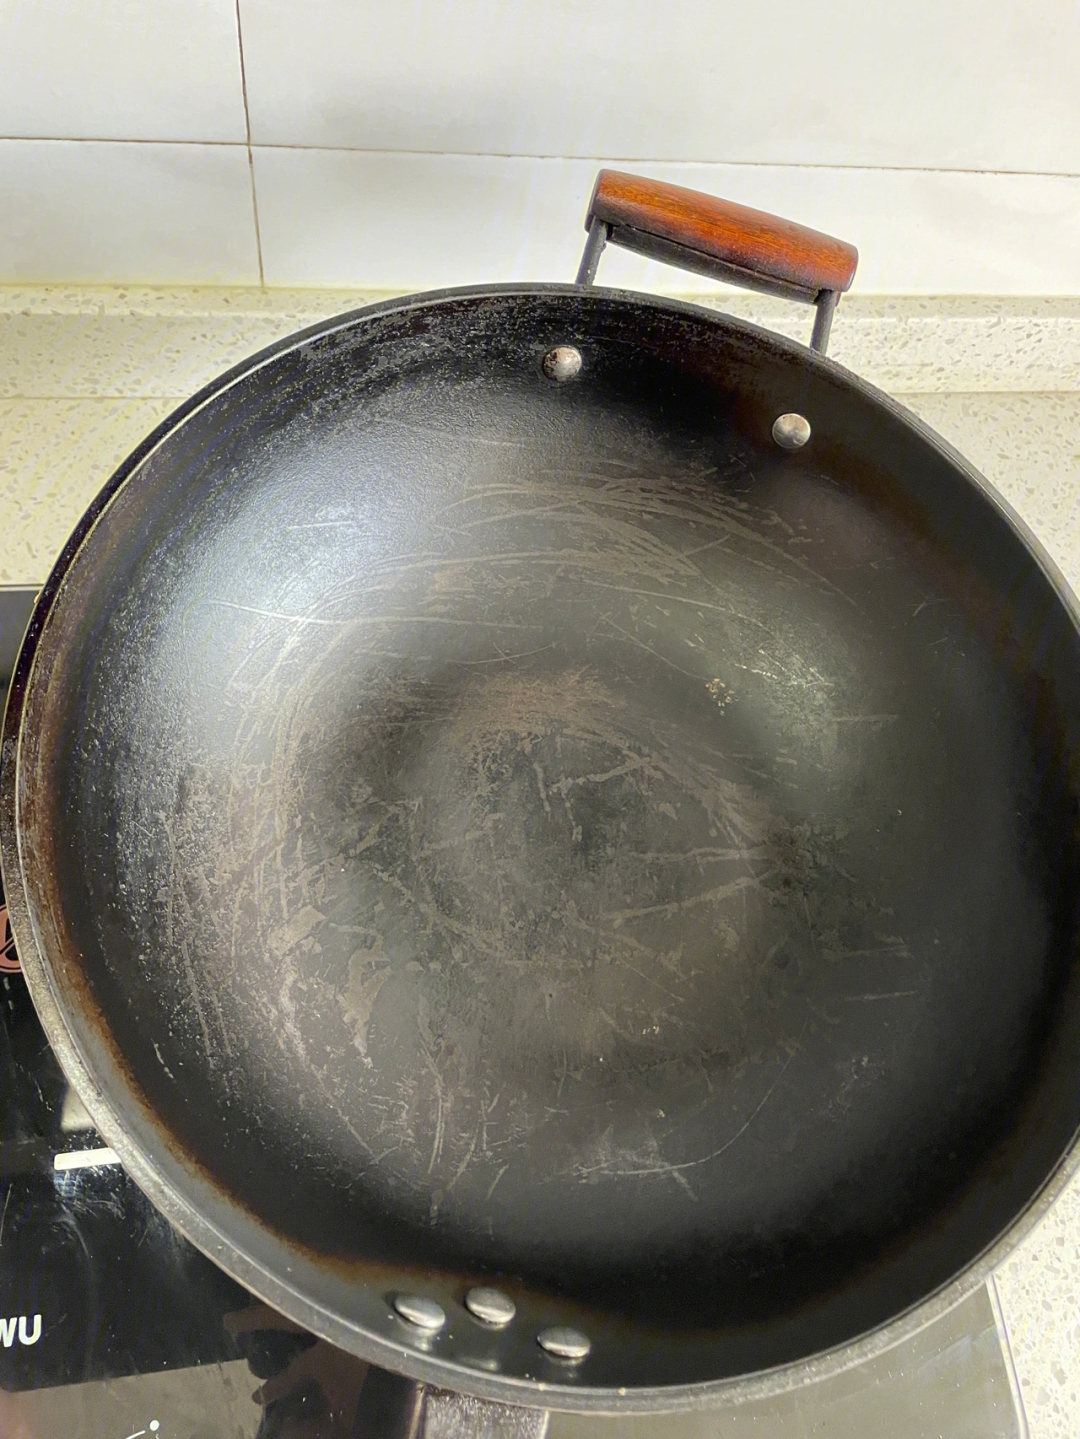 这是铁锅还是涂层锅